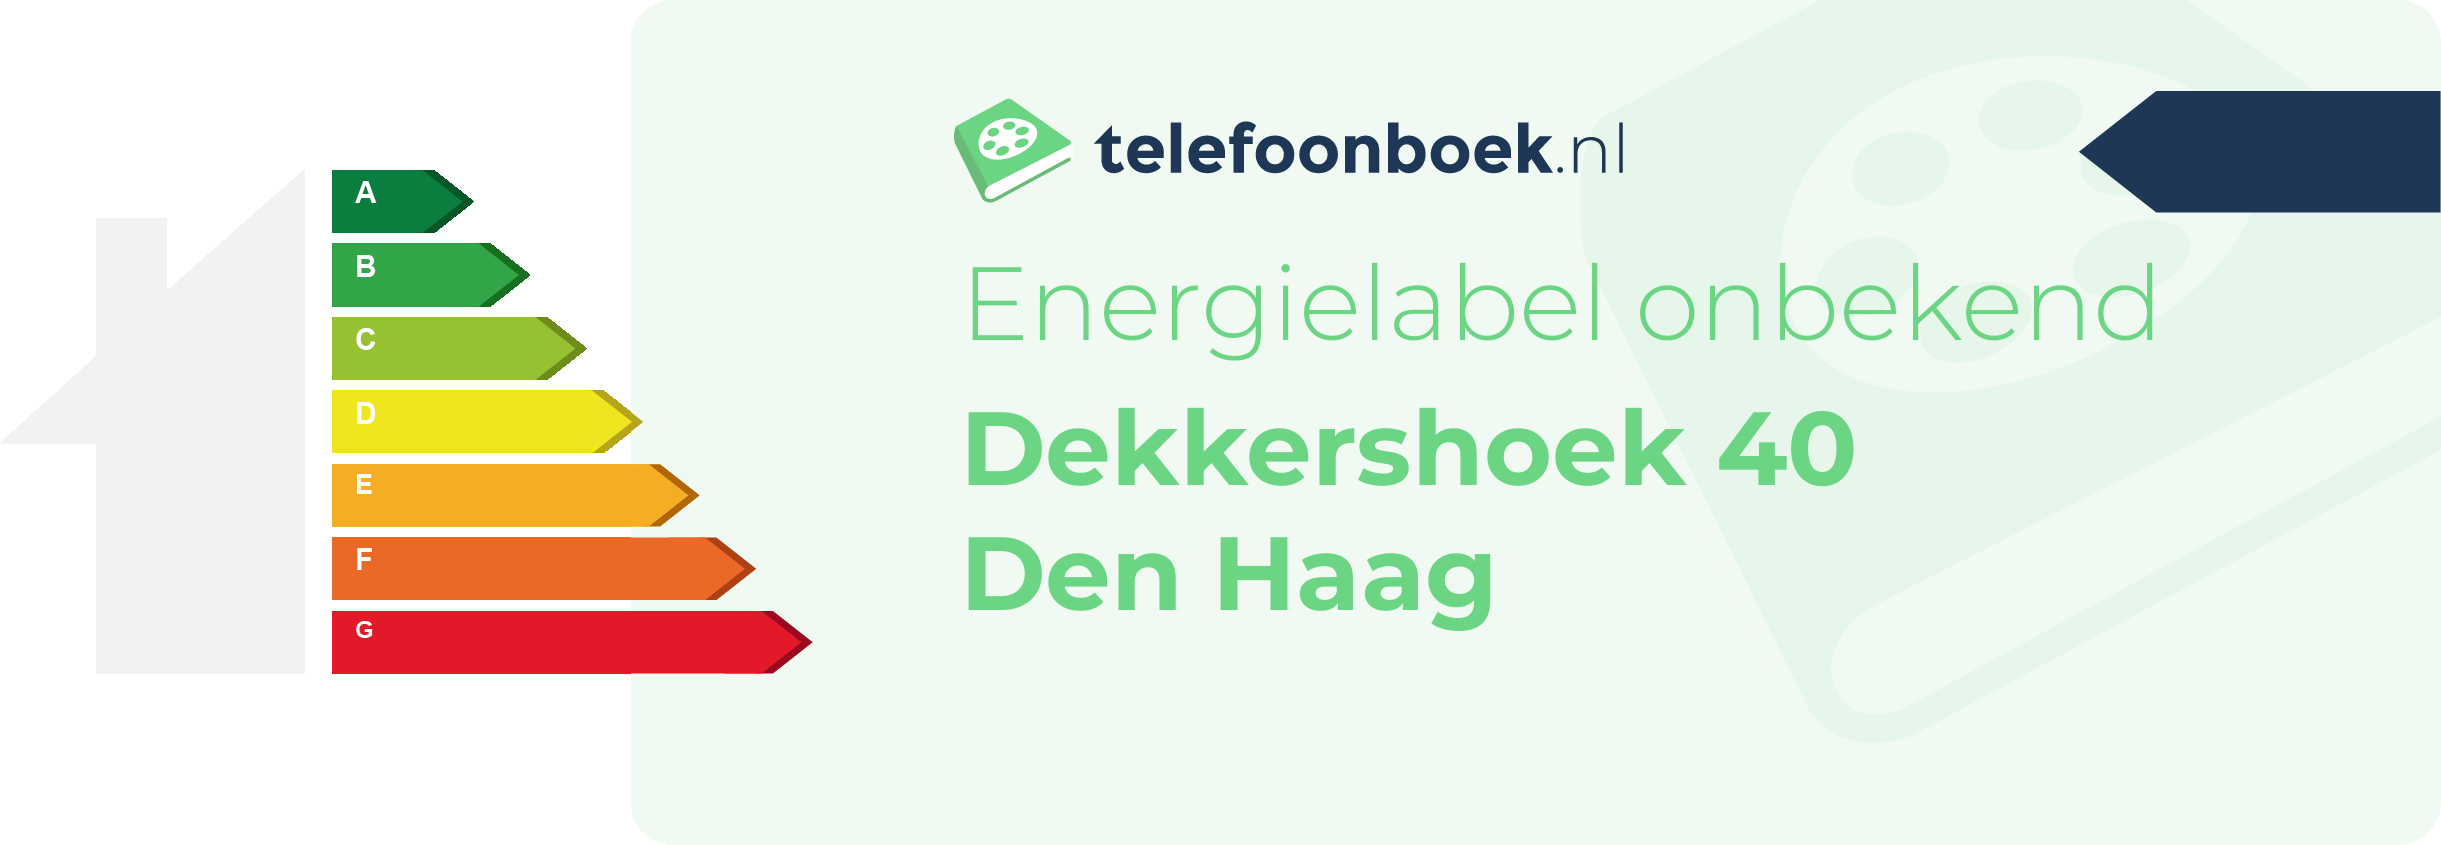 Energielabel Dekkershoek 40 Den Haag